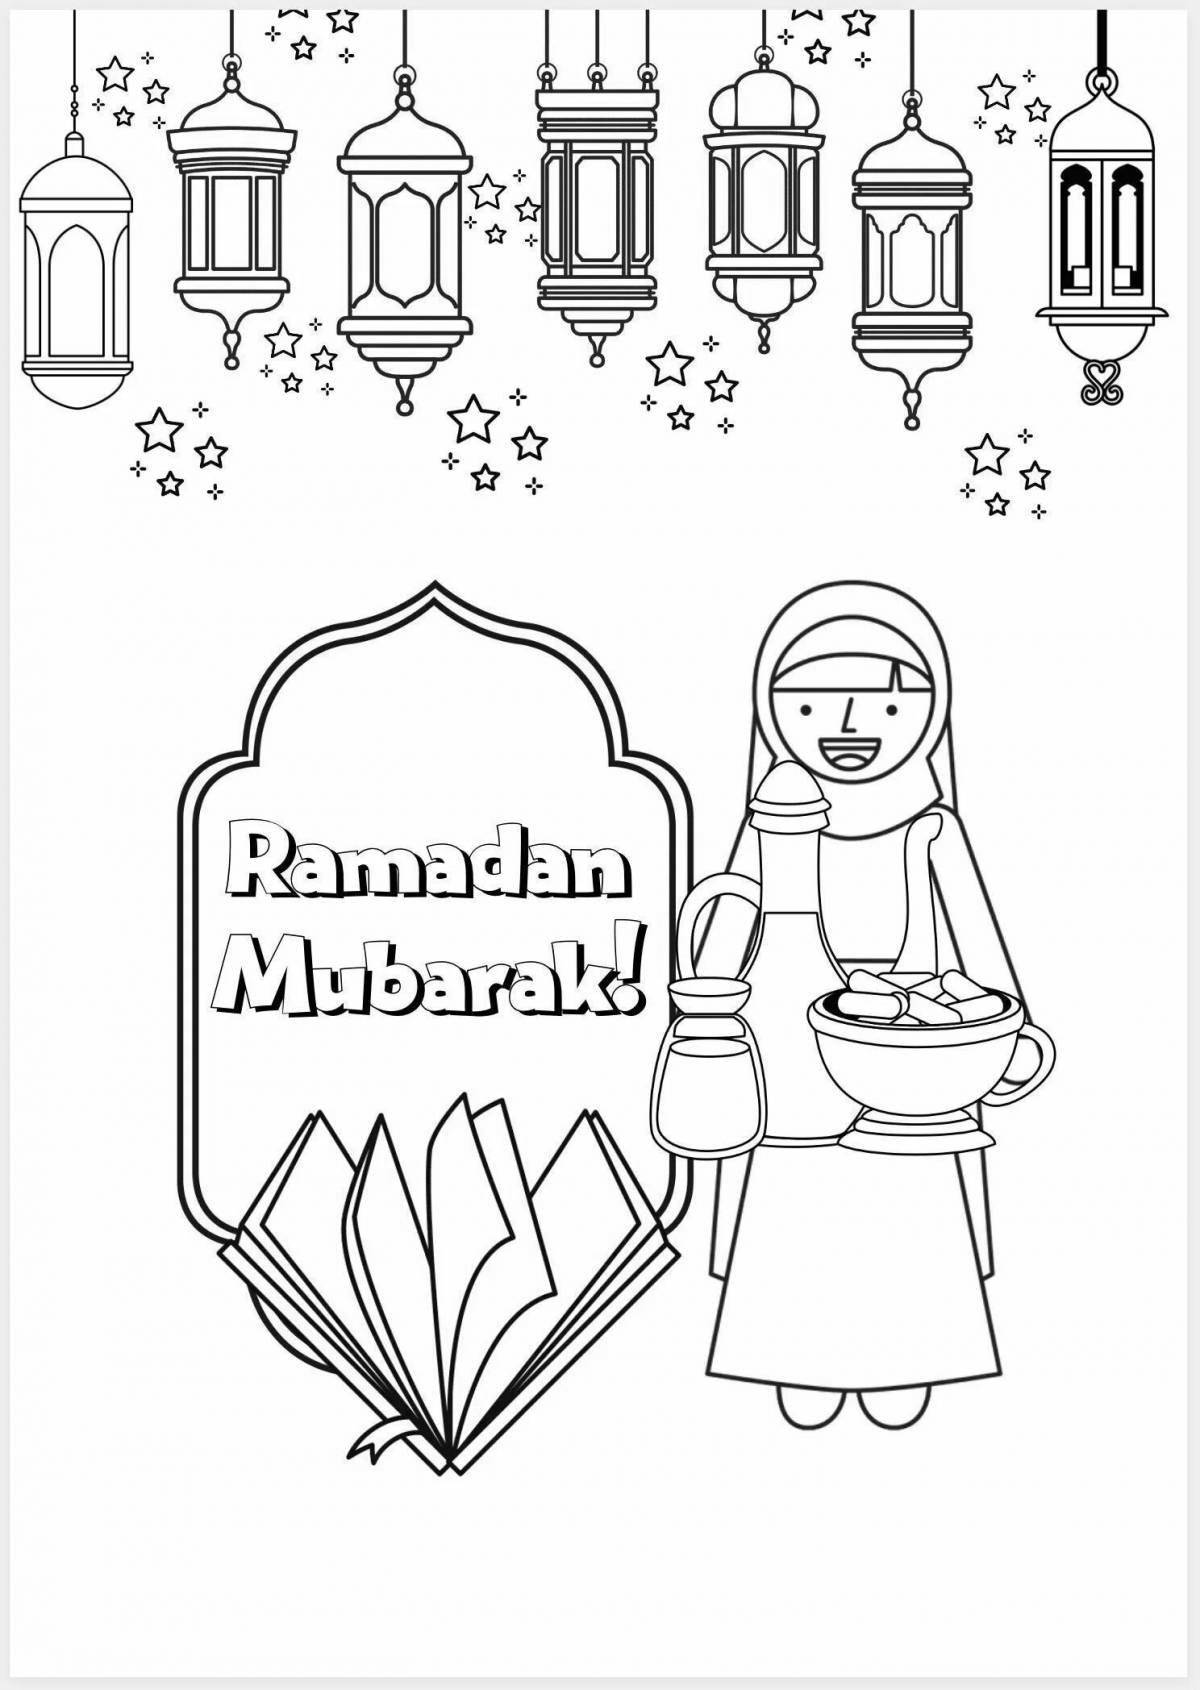 Awesome ramadan coloring book